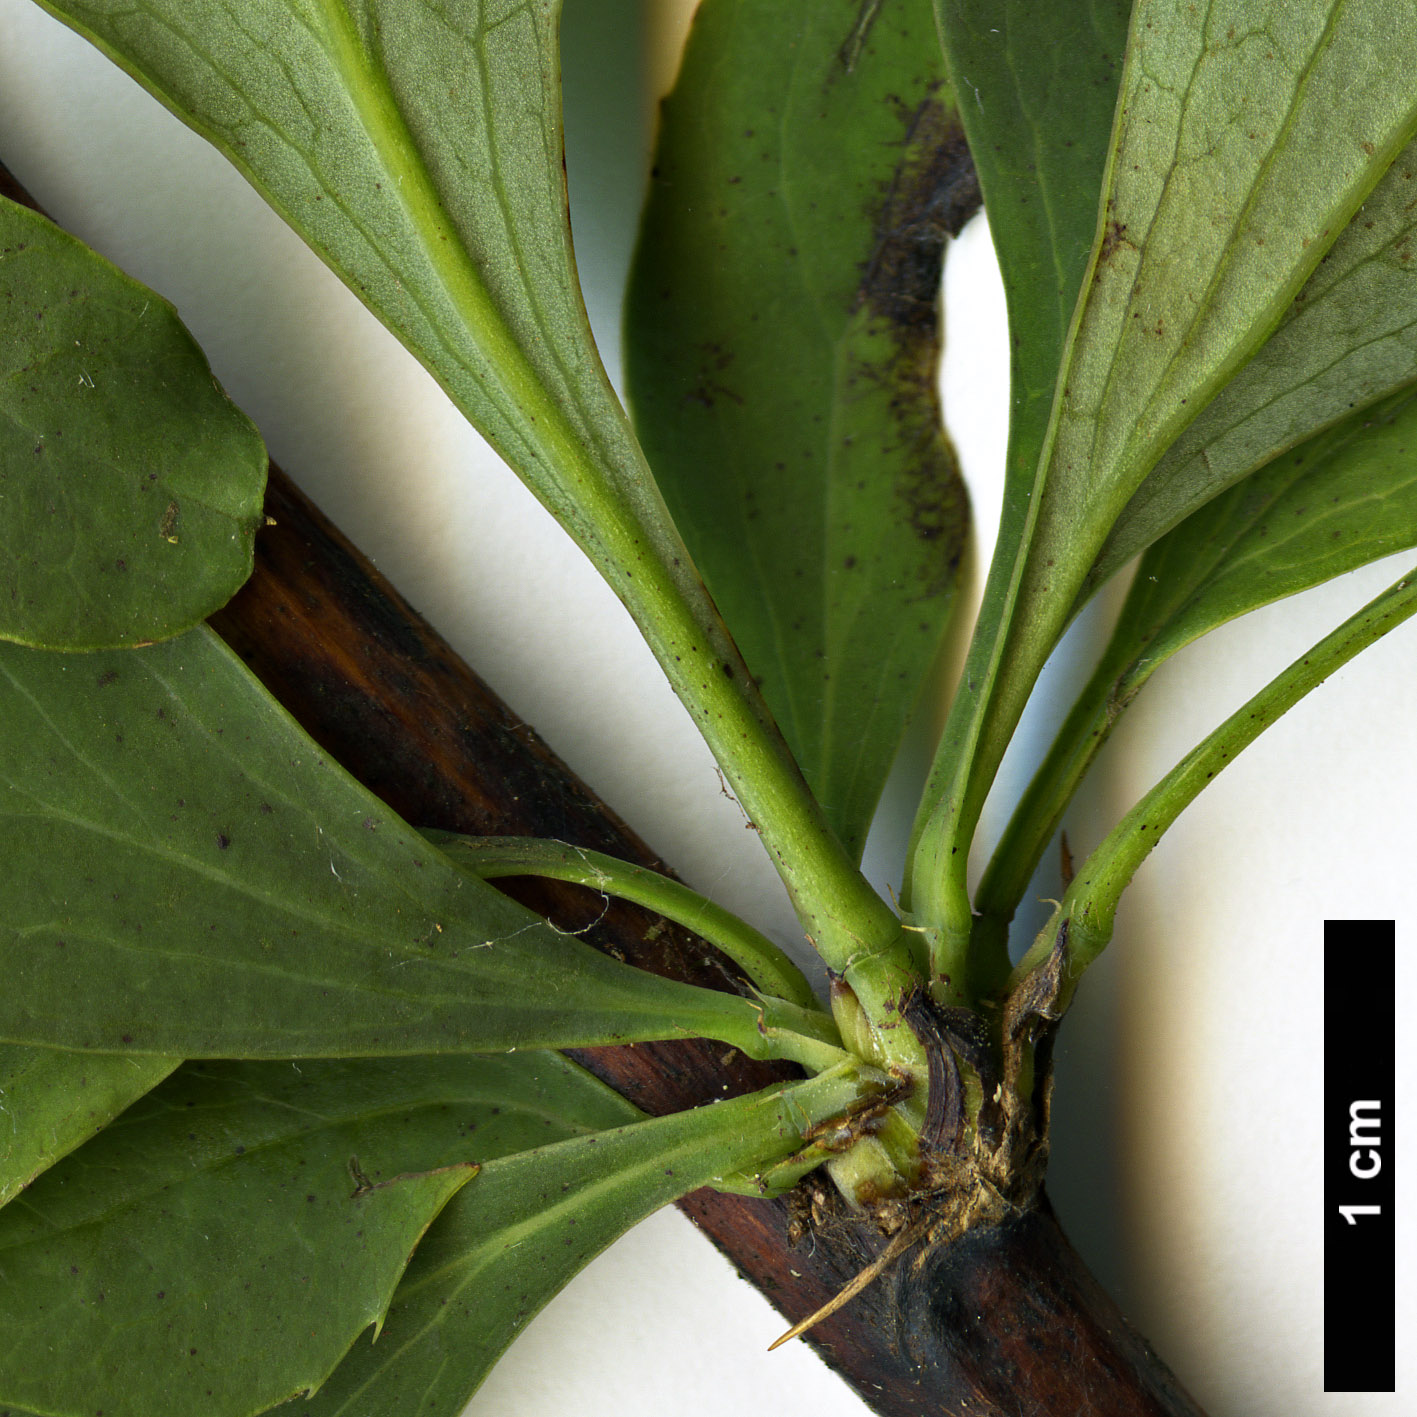 High resolution image: Family: Berberidaceae - Genus: Berberis - Taxon: maderensis